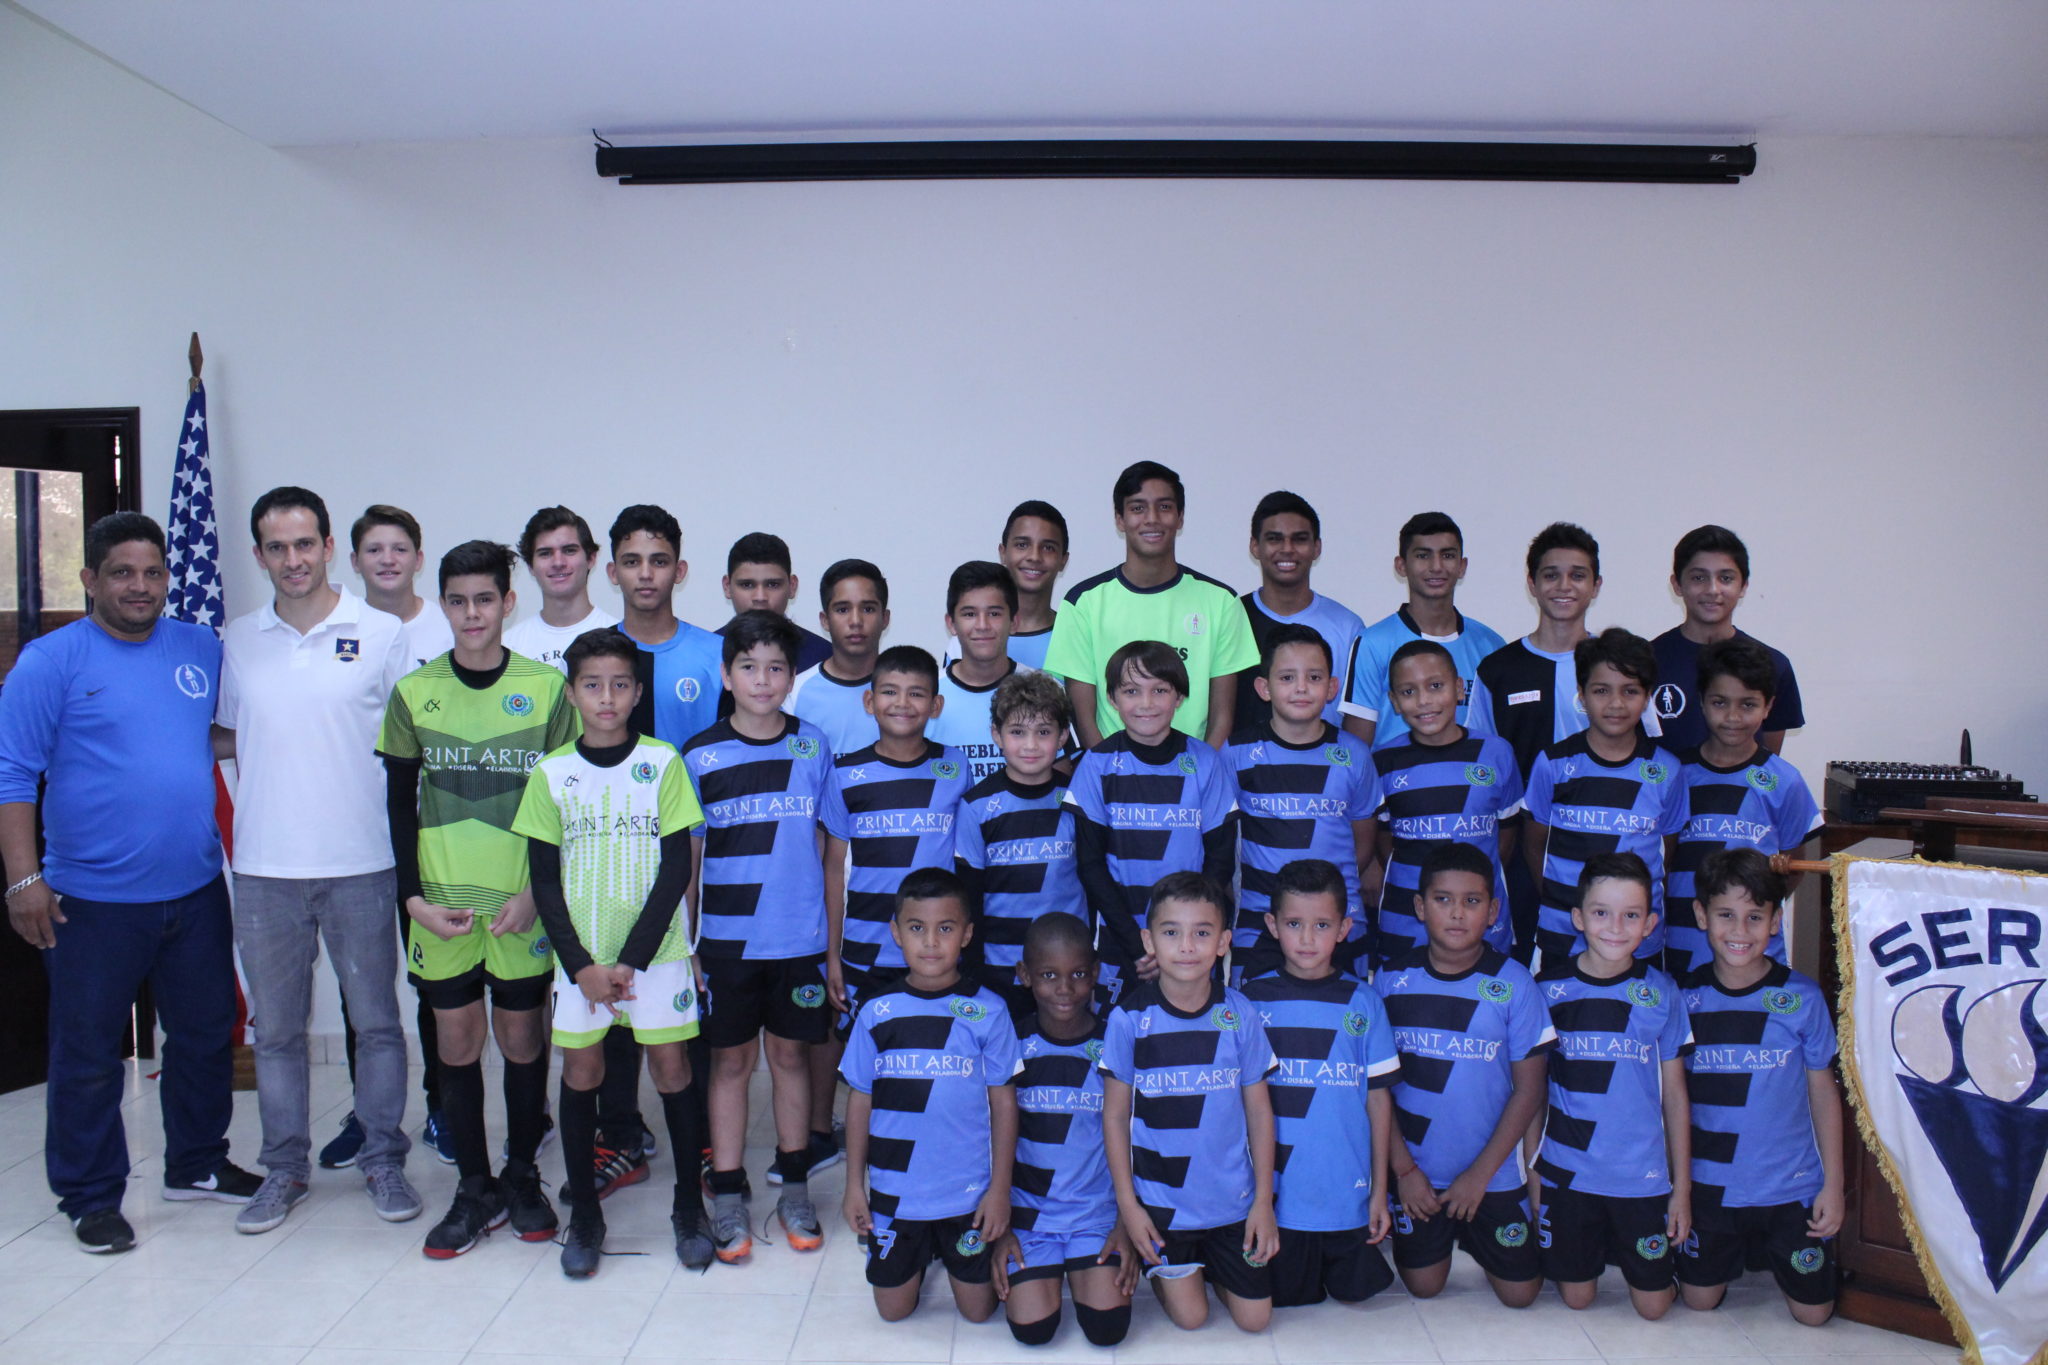 Soccer Camp de la Fundación Marcet-Barcelona está en la SERAN